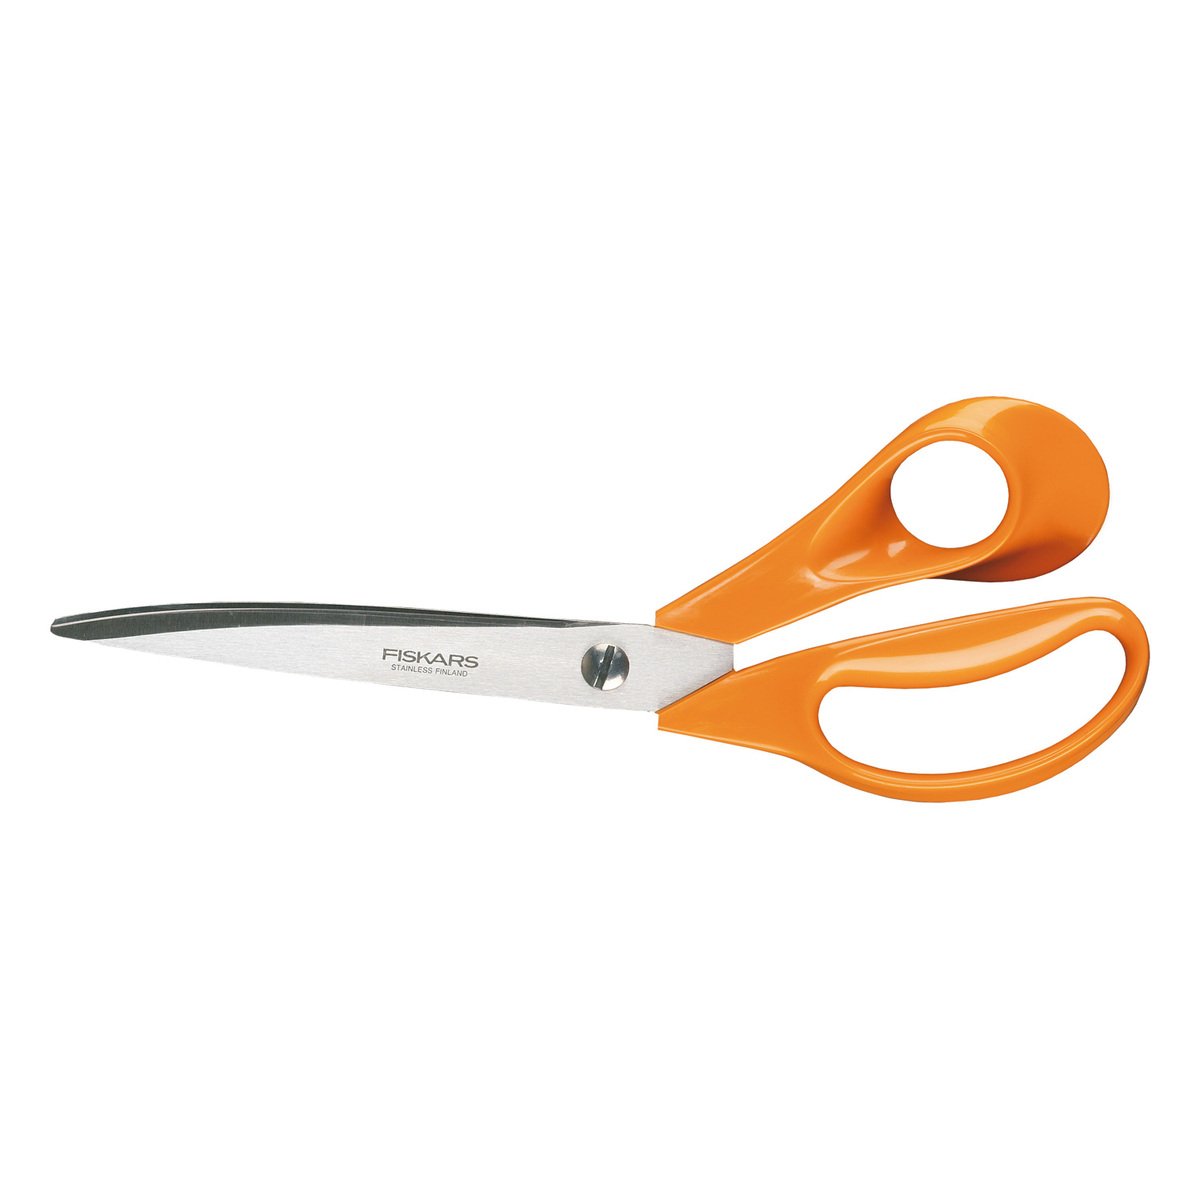 Fiskars Classic curved manicure scissors